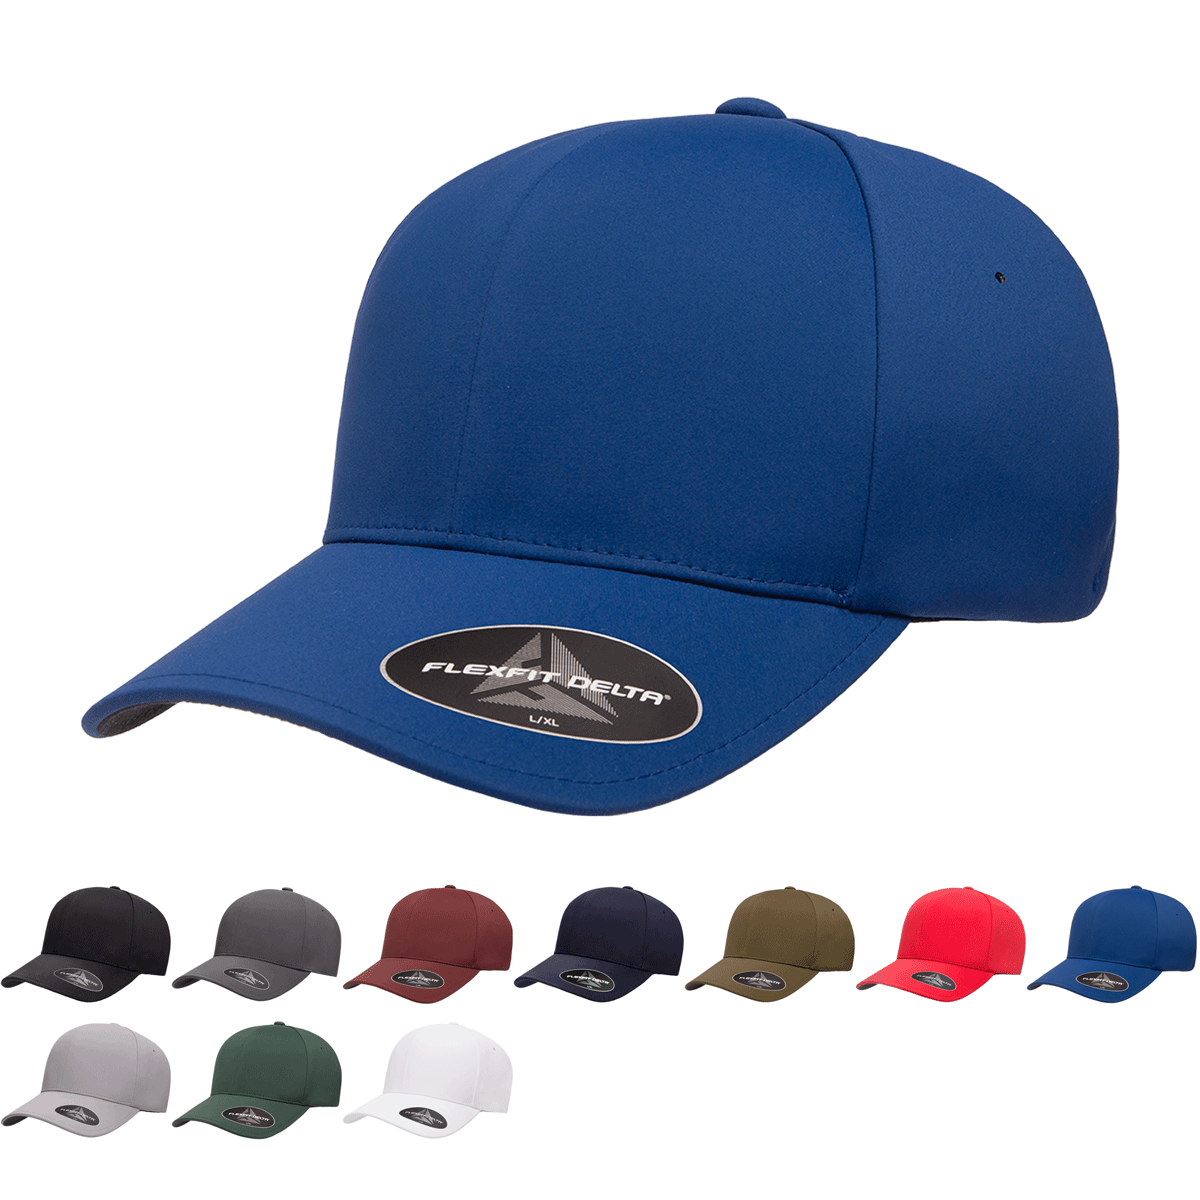 Cap Seamless Delta® 180 The - Wholesale Hat, Flexfit 180 - Park –